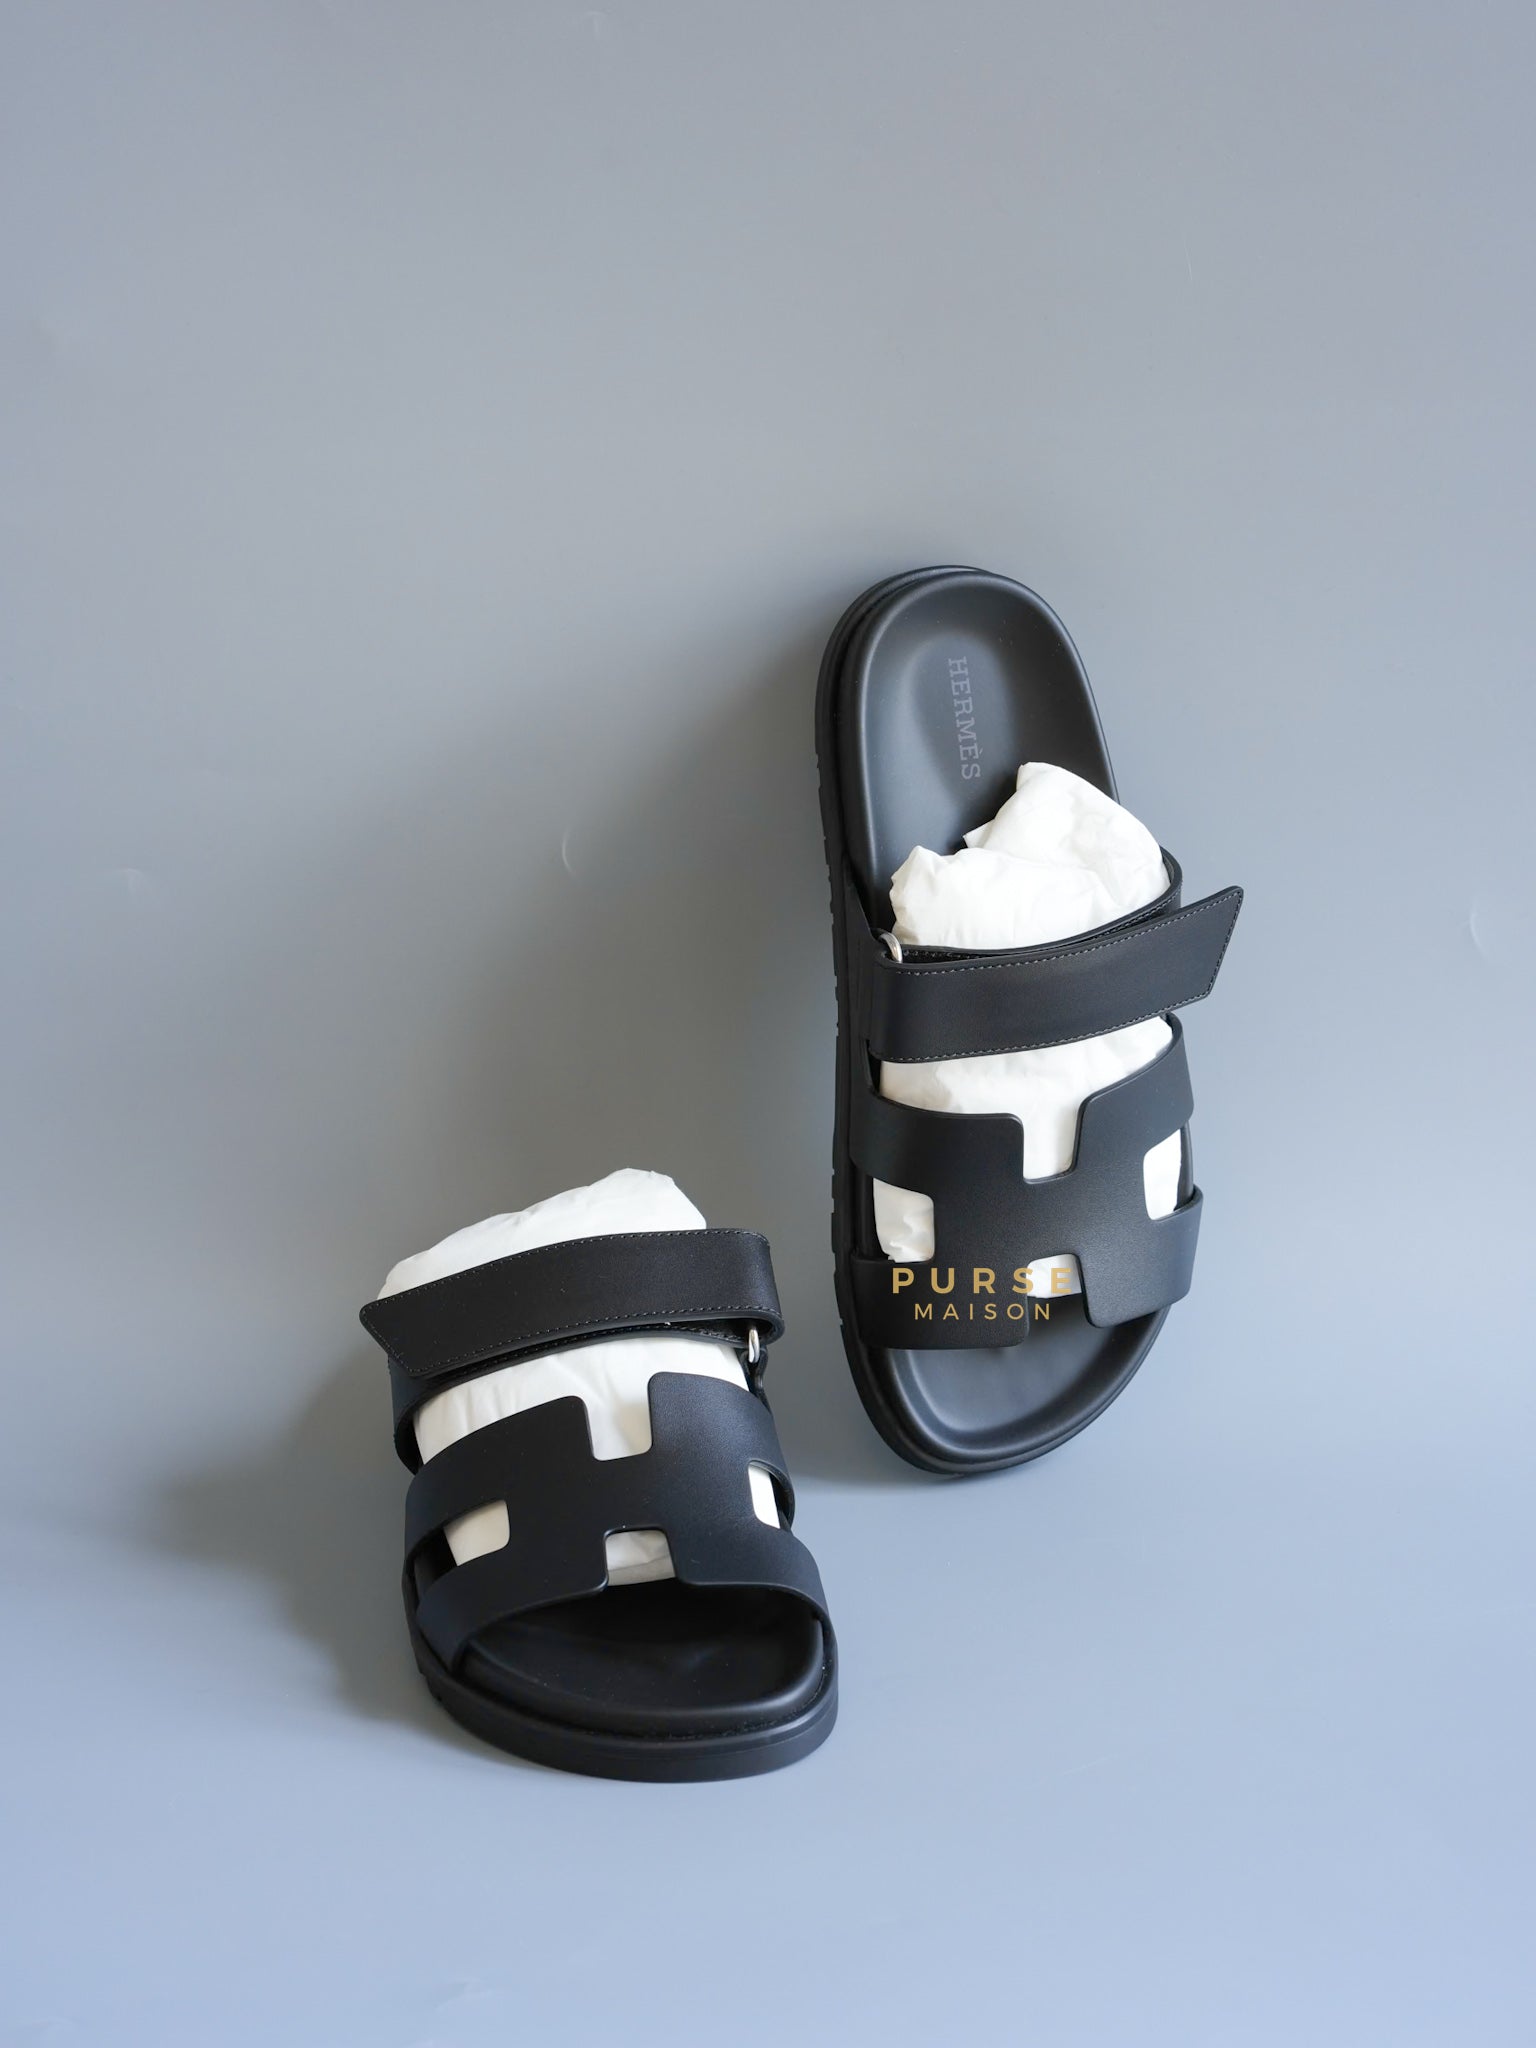 Chypre Black Calfskin Leather Techno Sandals Size 37.5 (25cm) | Purse Maison Luxury Bags Shop